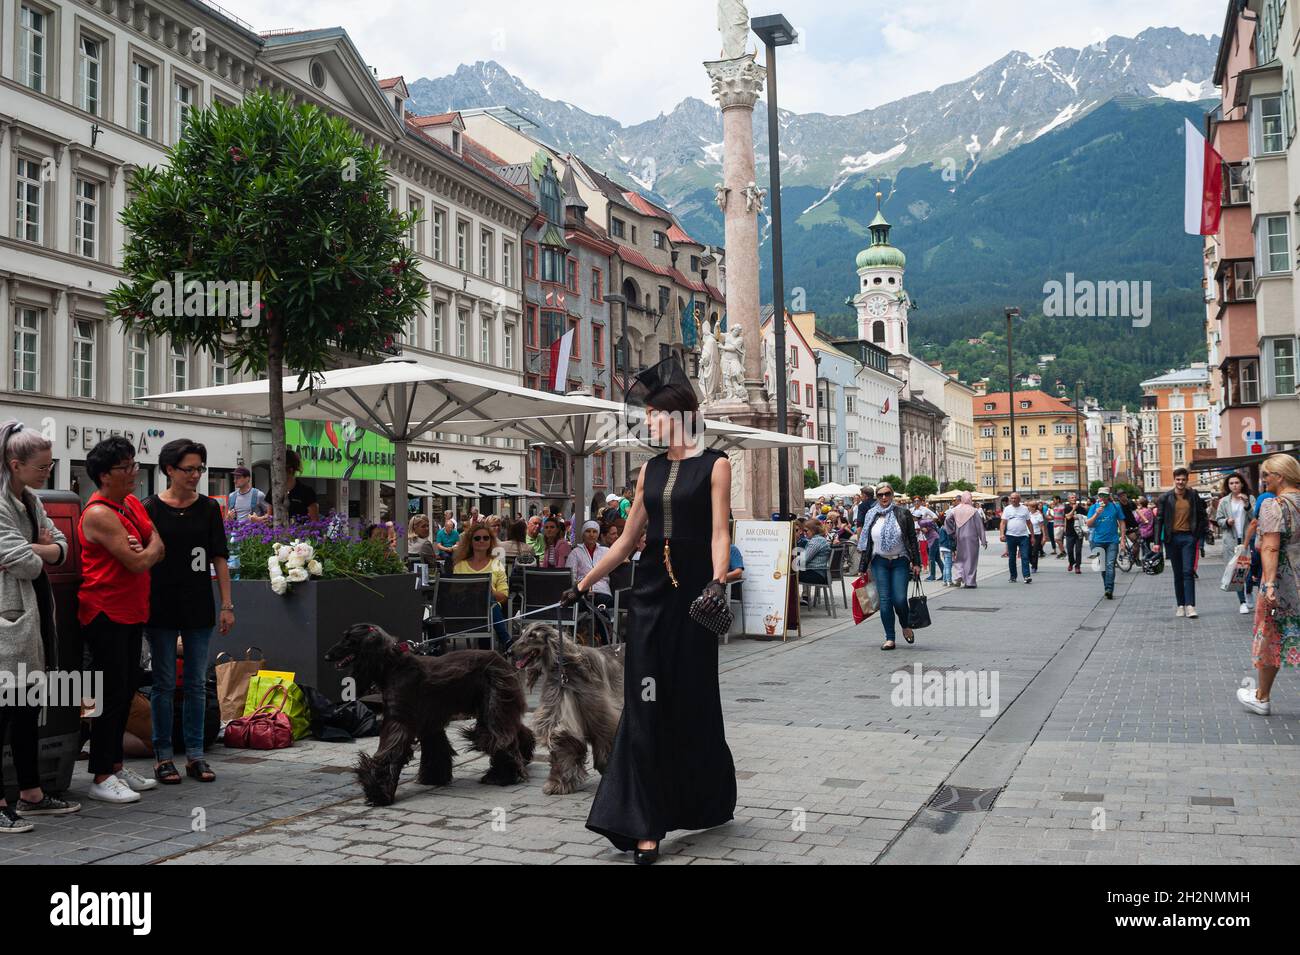 22.06.2019, Innsbruck, Tirolo, Austria, Europa - la gente cammina lungo la zona pedonale di Maria-Theresien-Strasse nel centro della città vecchia. Foto Stock